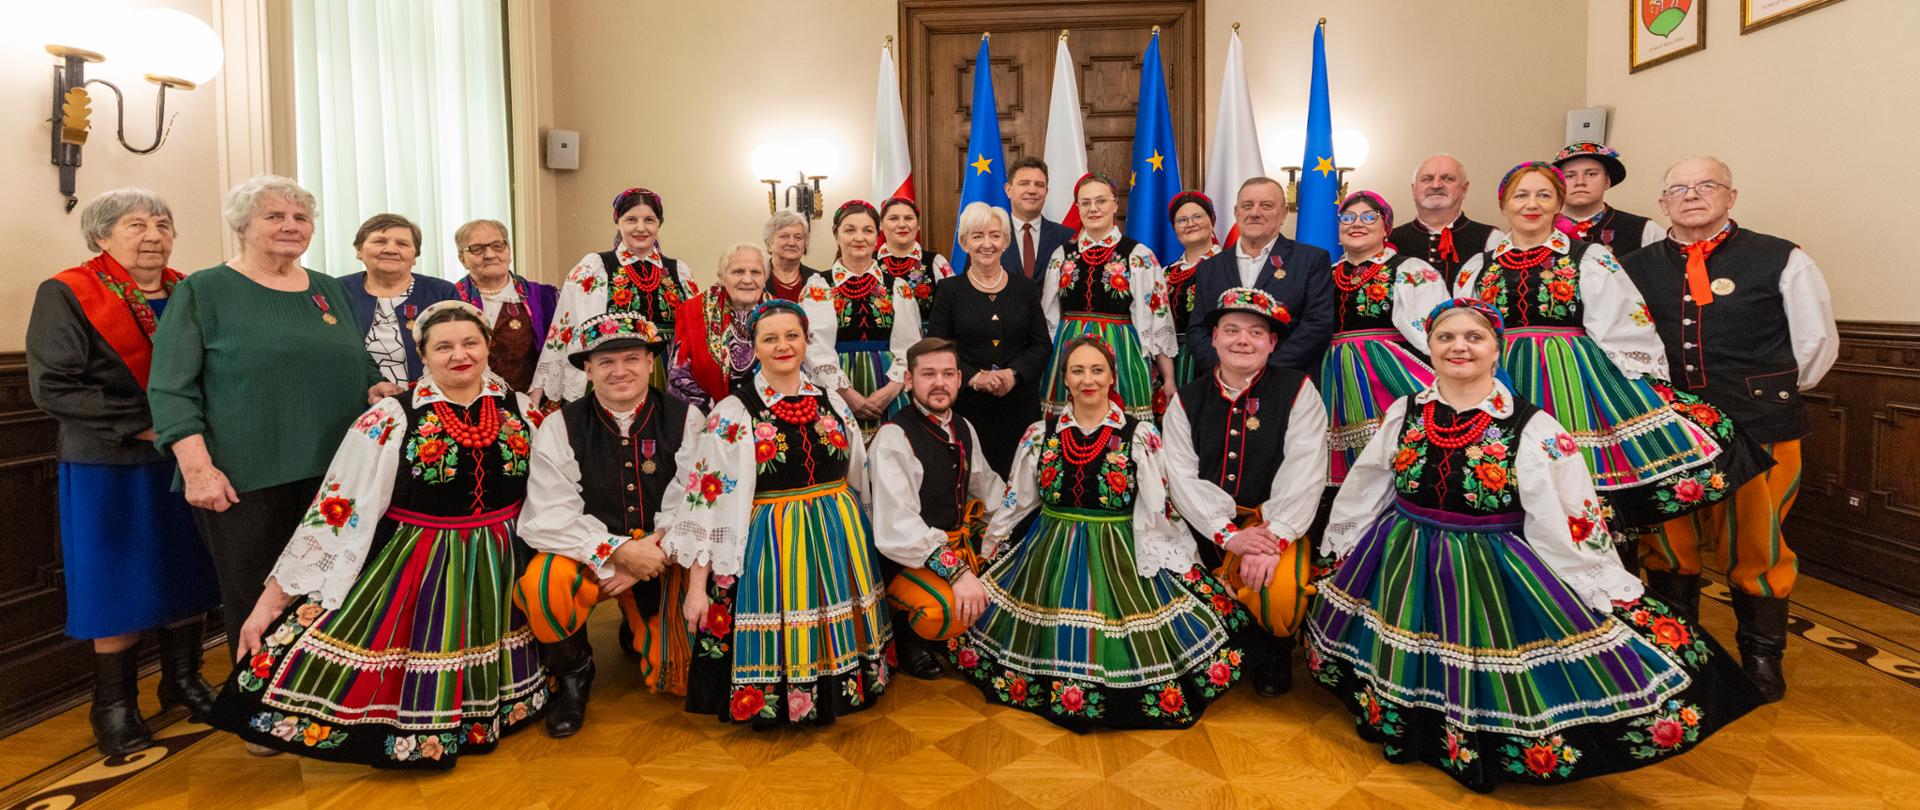 Wojewoda łódzki Dorota Ryl wspólnie z odznaczonymi przedstawicielami Zespołu Ludowego "Ziemia Słupiecka". 